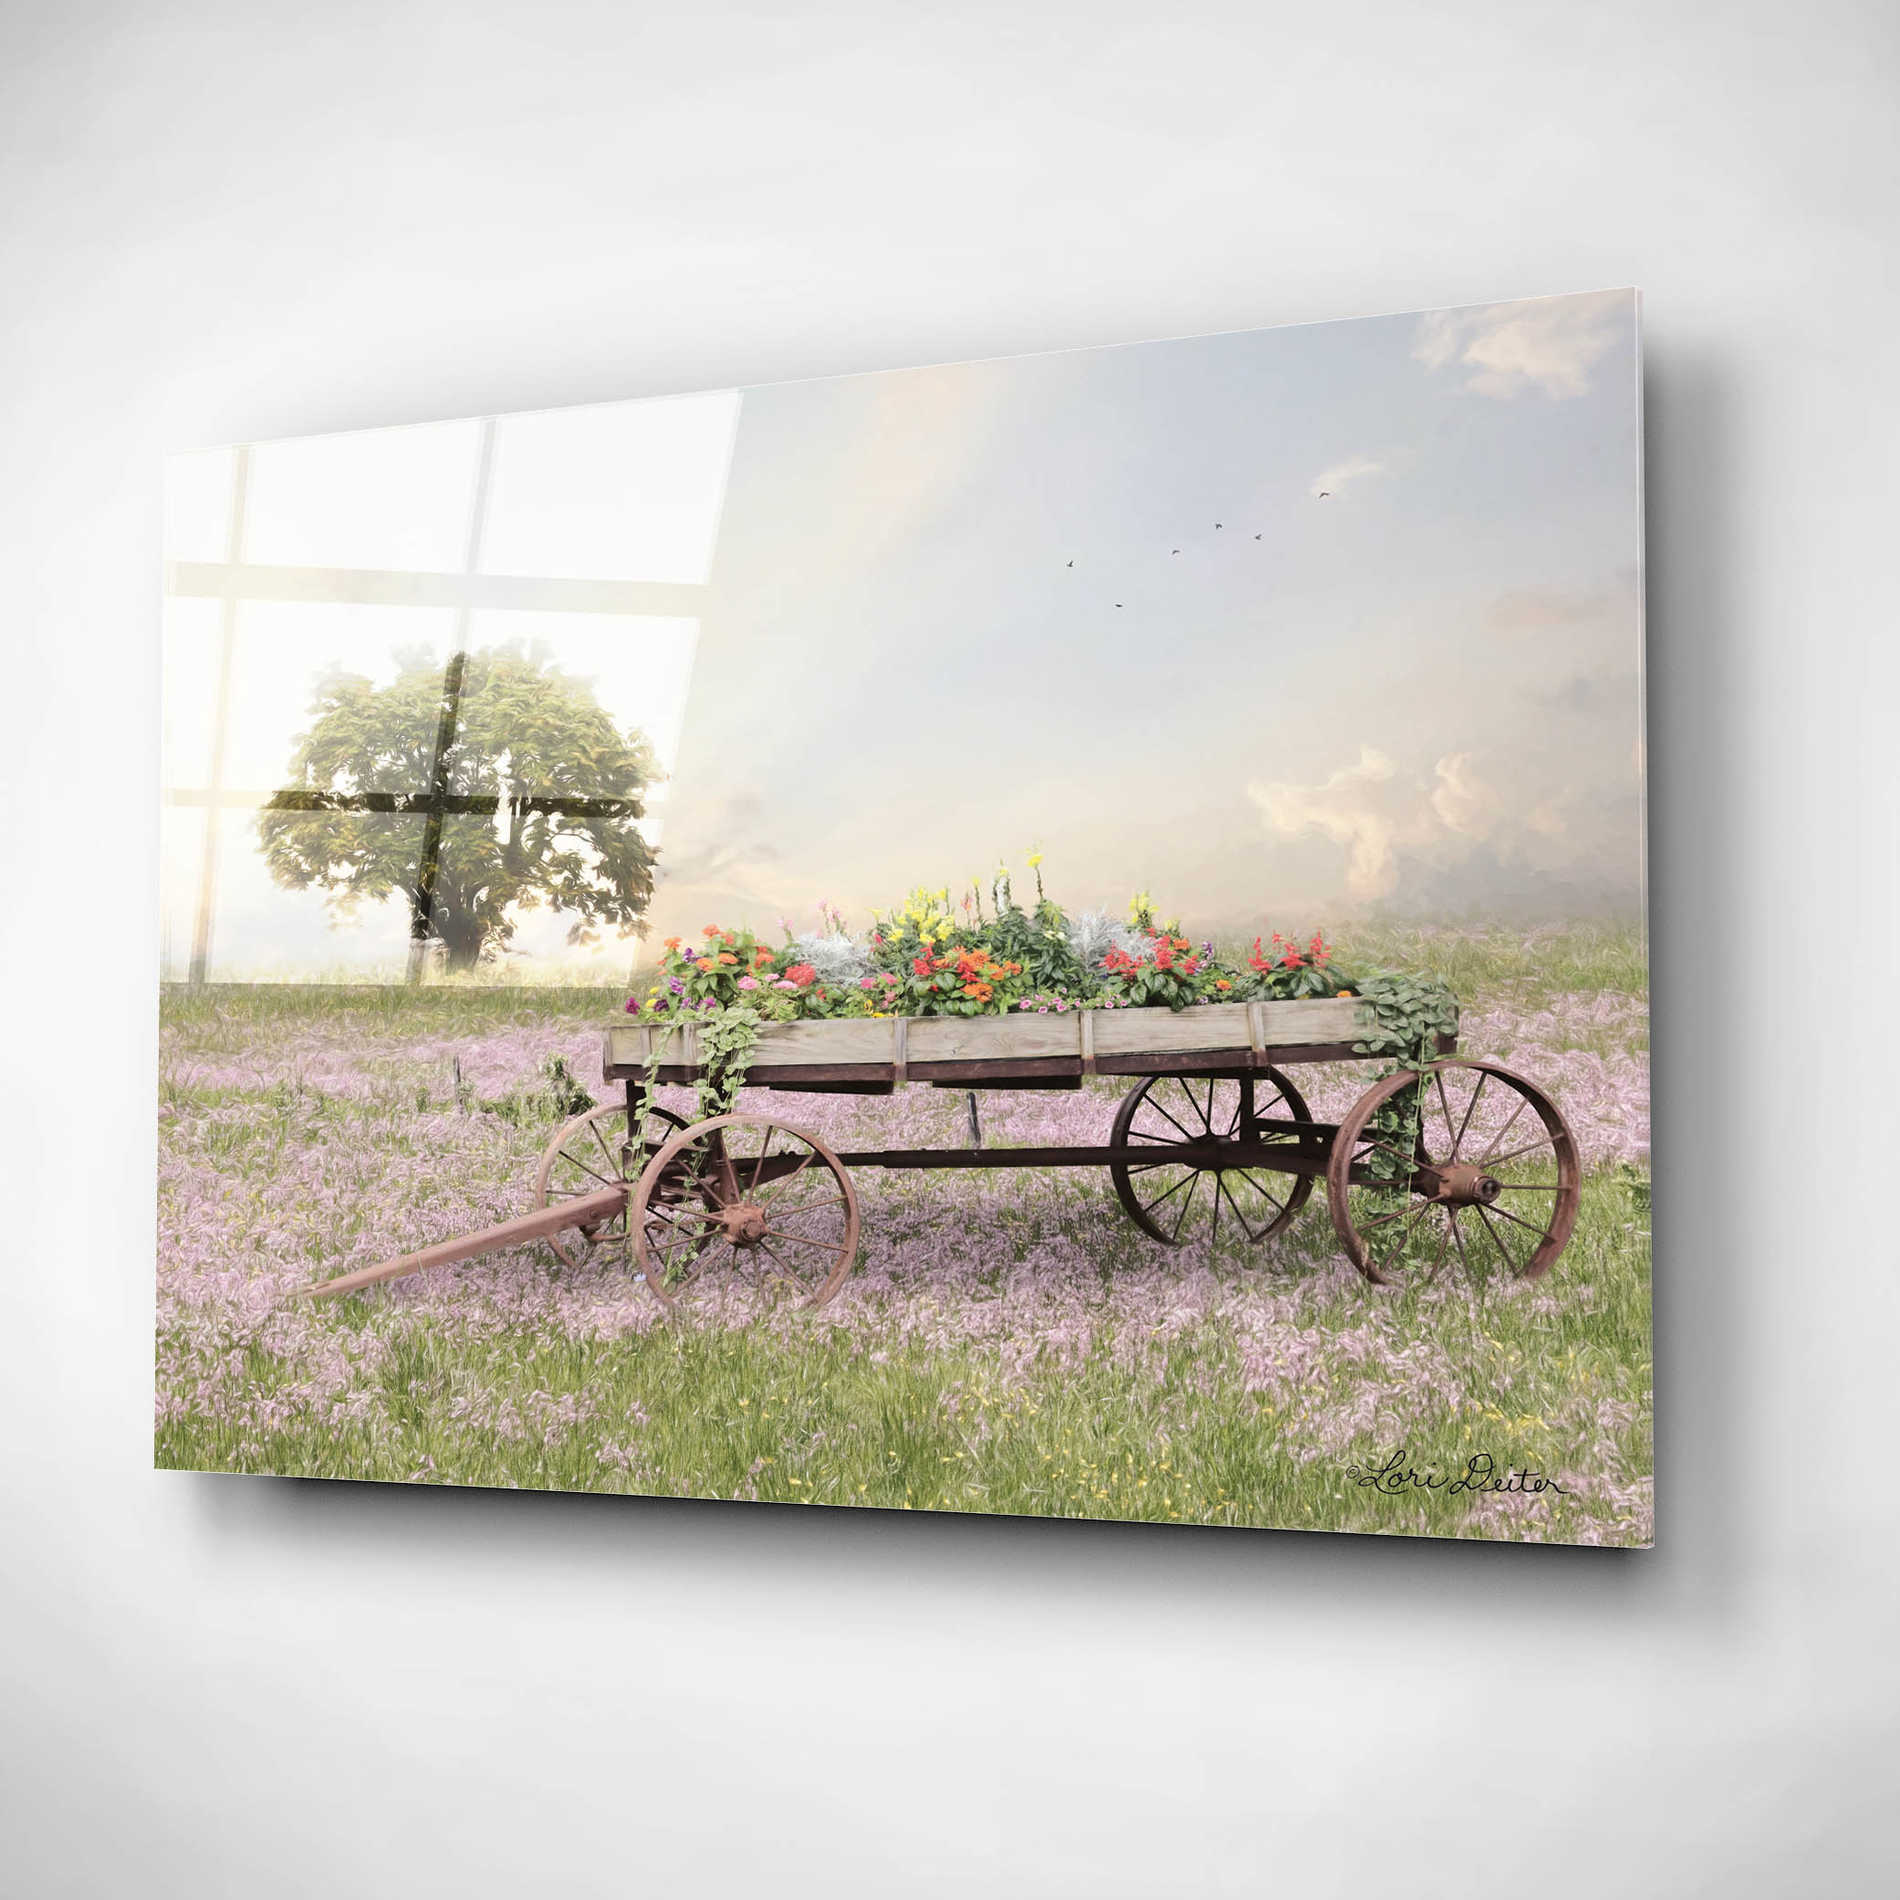 Epic Art 'Flower Wagon at Sunset' by Lori Deiter, Acrylic Glass Wall Art,16x12